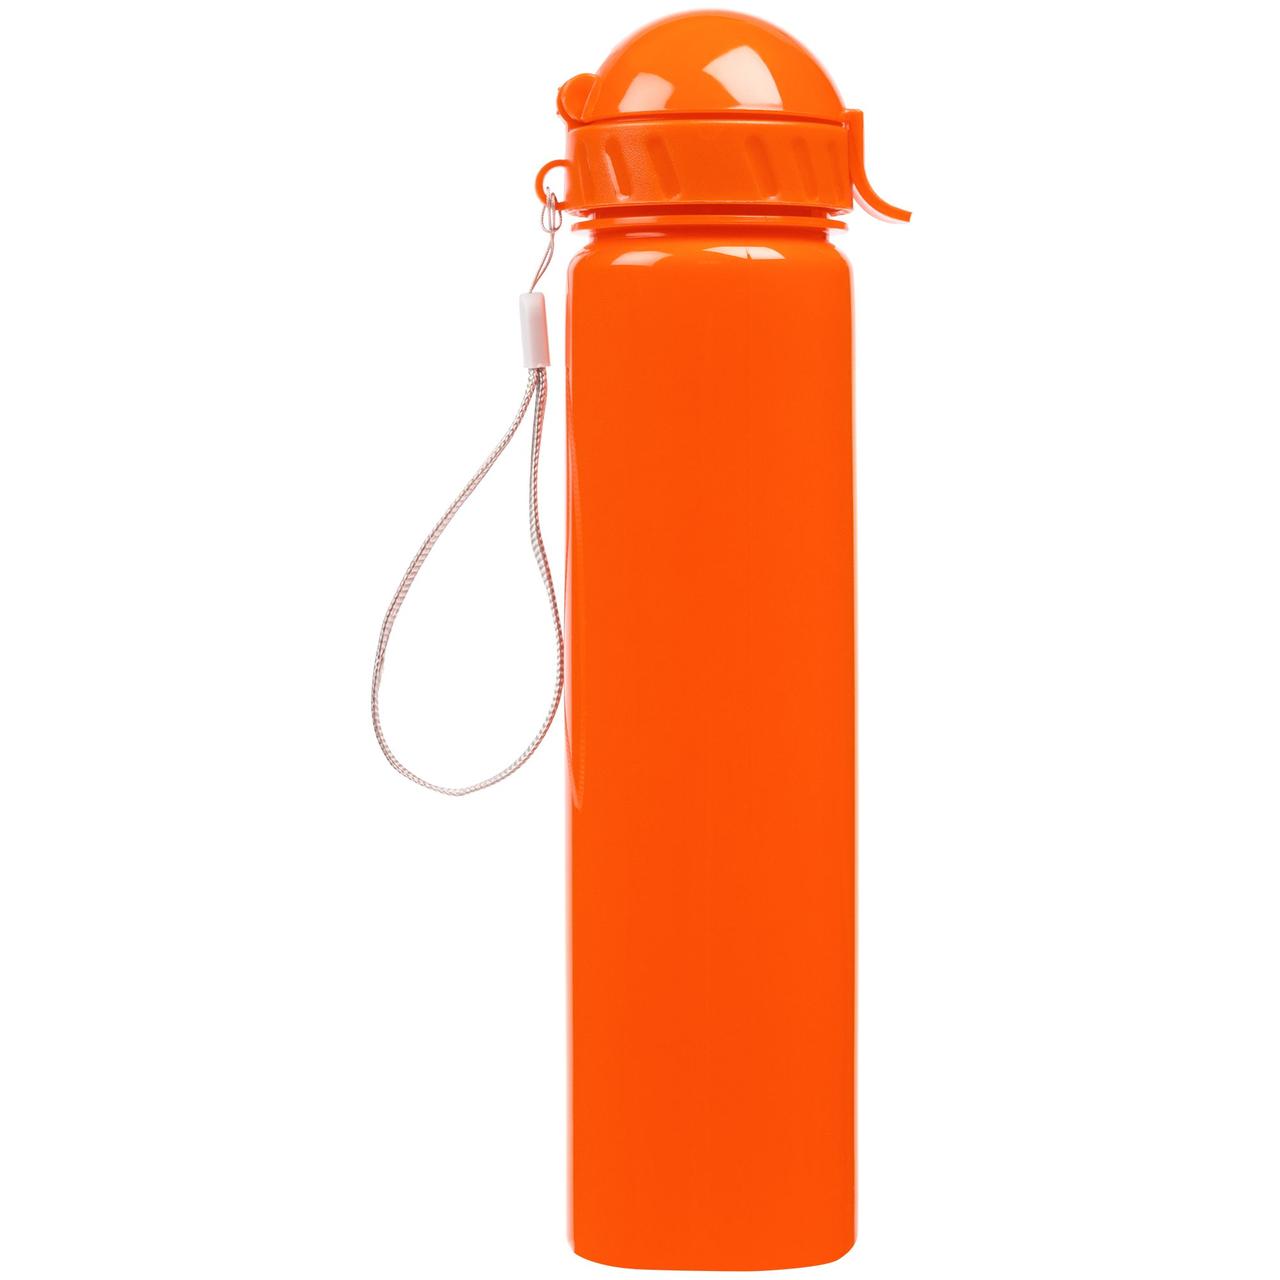 Бутылка для воды Barley, оранжевая (артикул 12351.20)